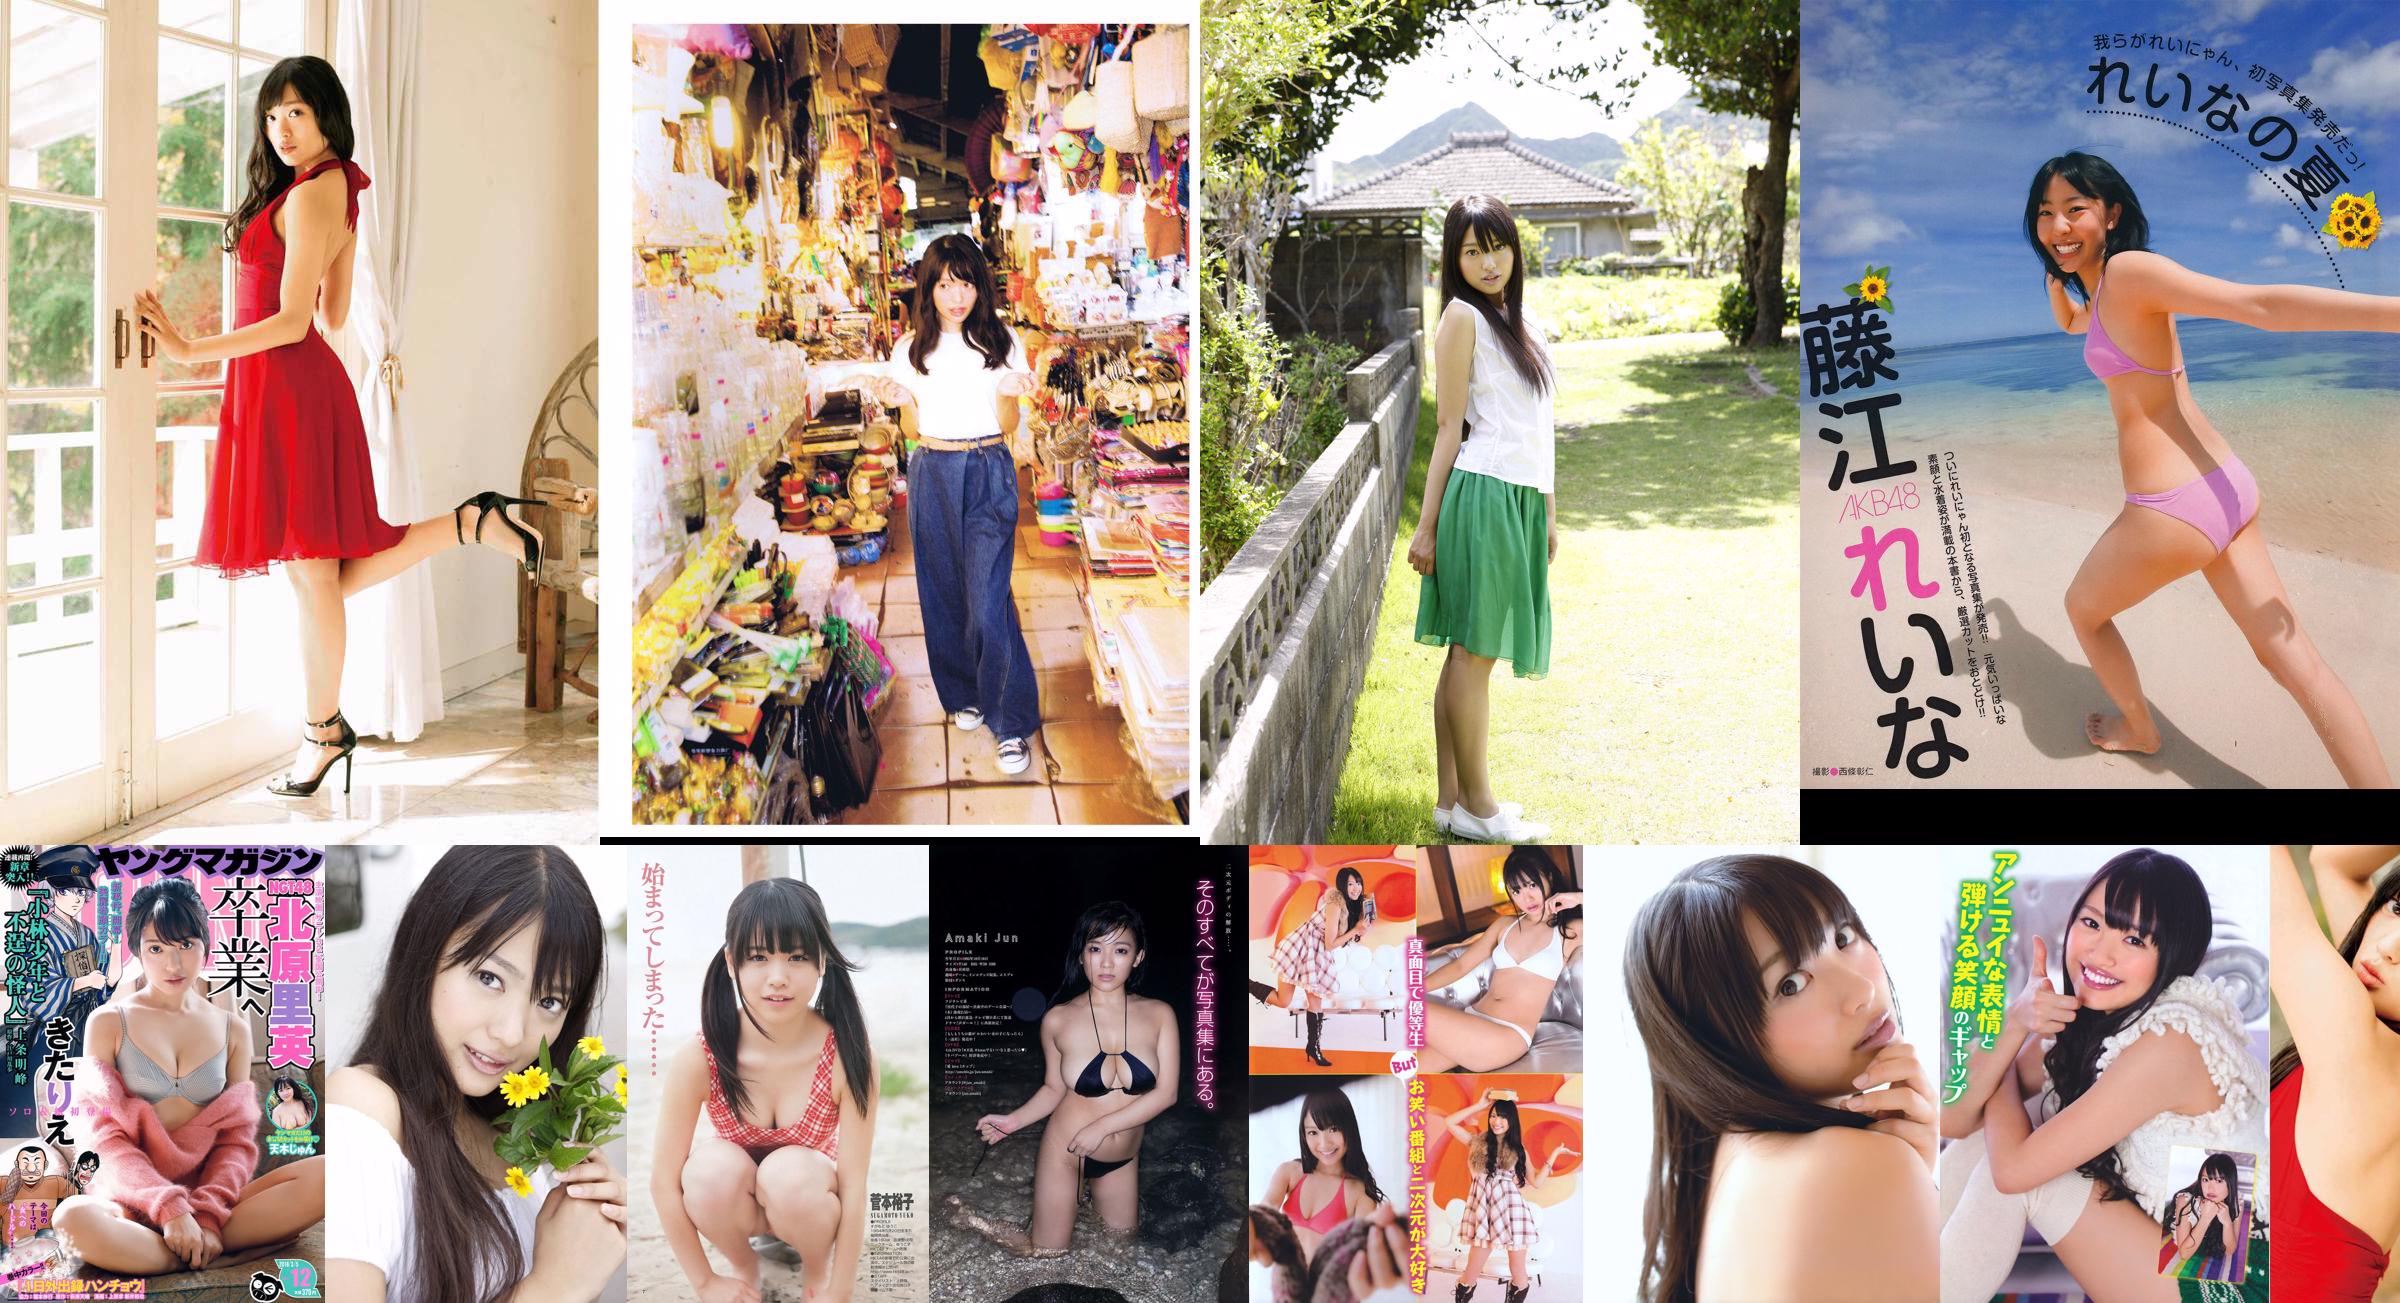 [EX Taishu] Rie Kitahara Serina KONAN Yumi Fujikoso 2011 Nr. 08 Foto No.75c7b5 Seite 6